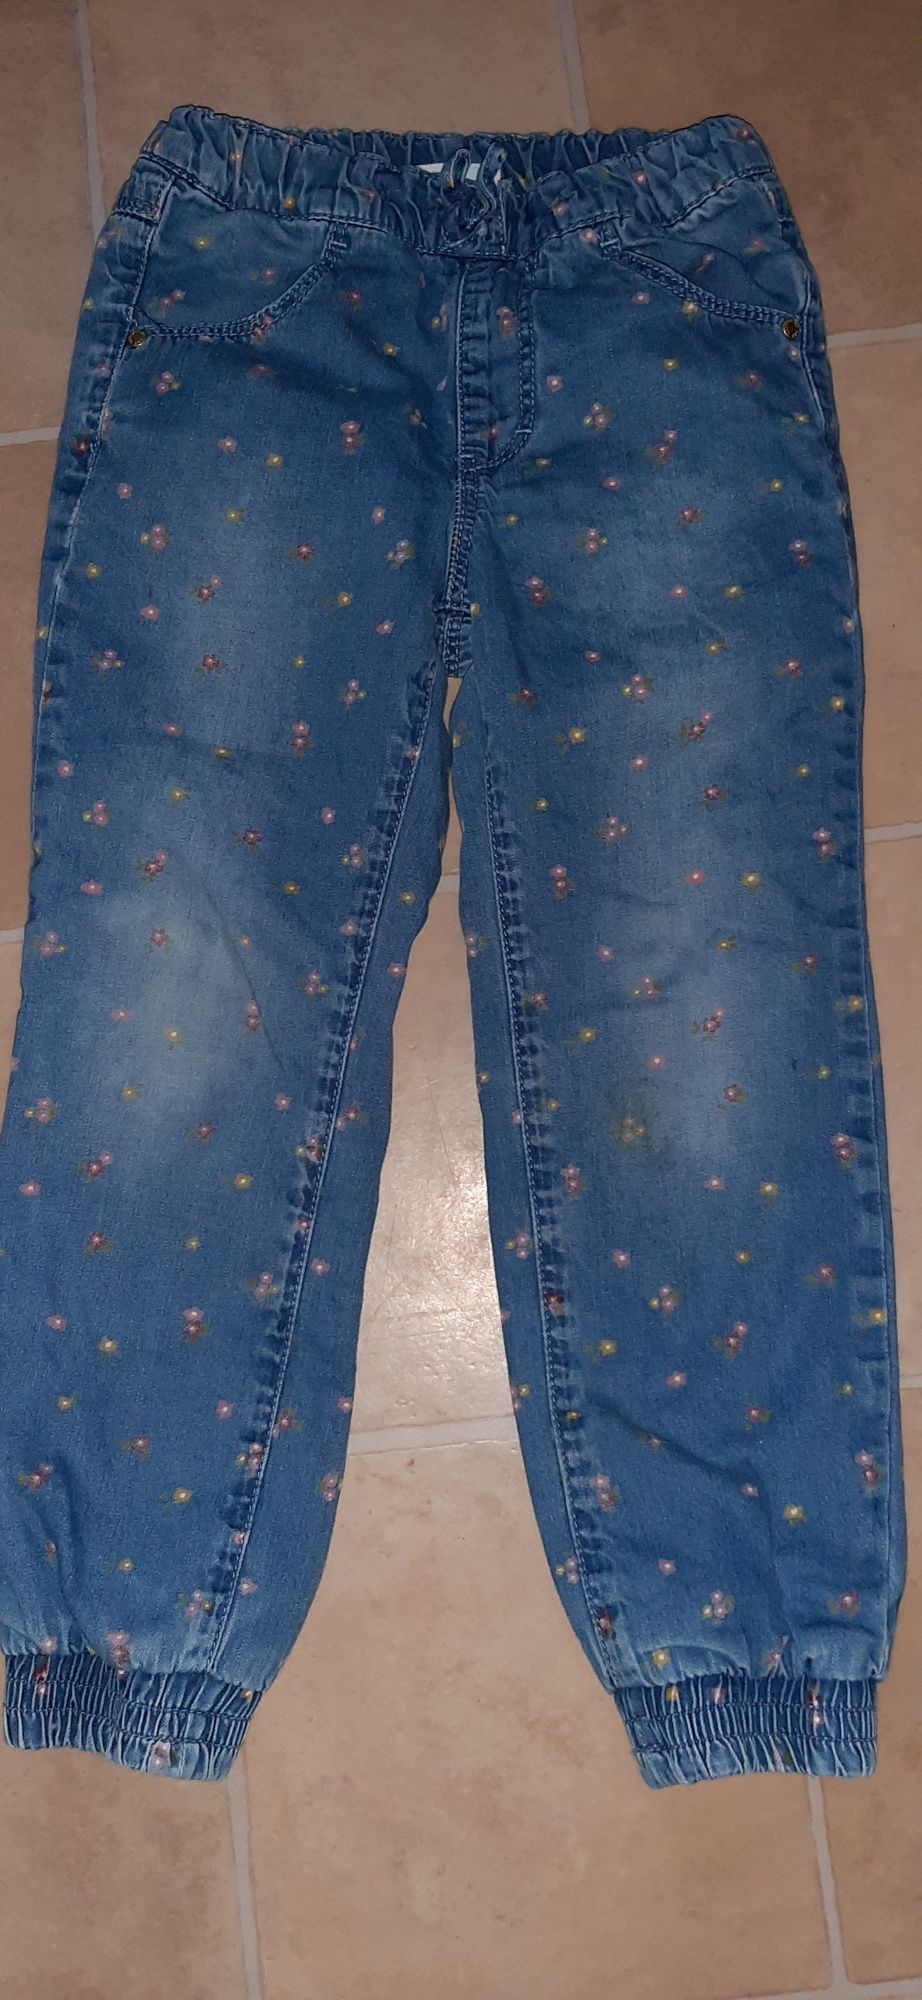 Spodnie jeans ocieplane rozmiar 110